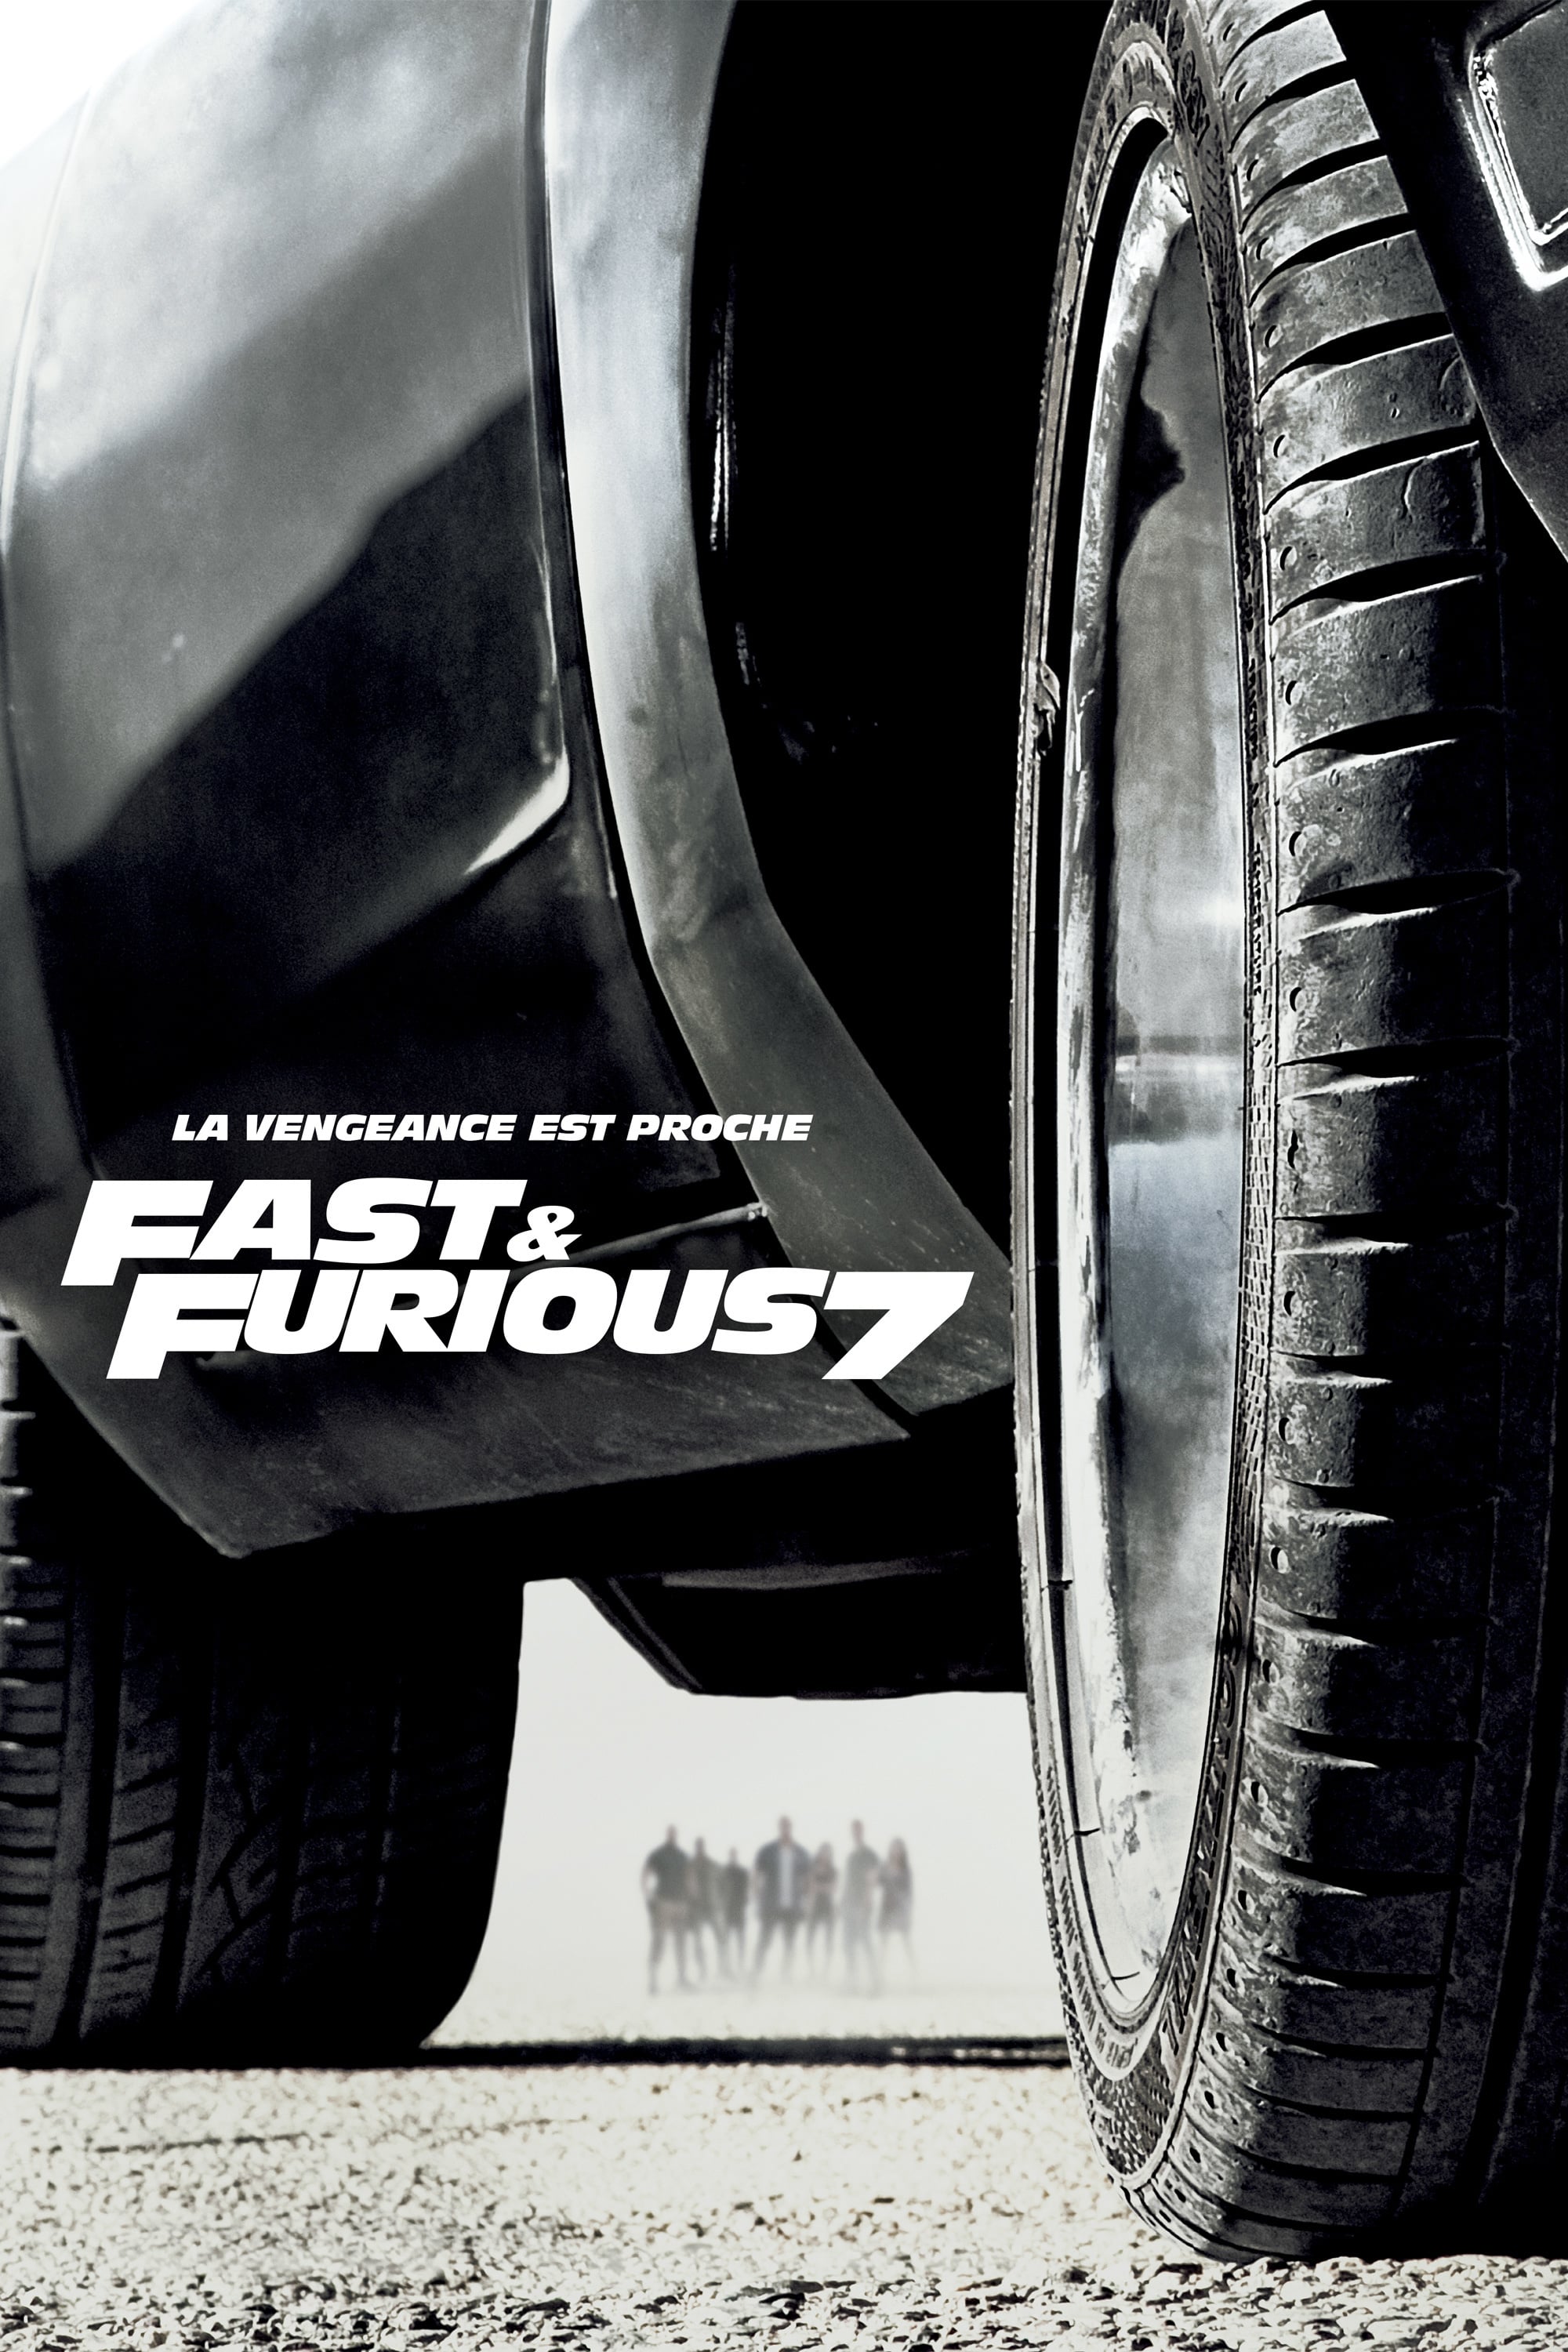 Affiche du film "Fast & Furious 7"